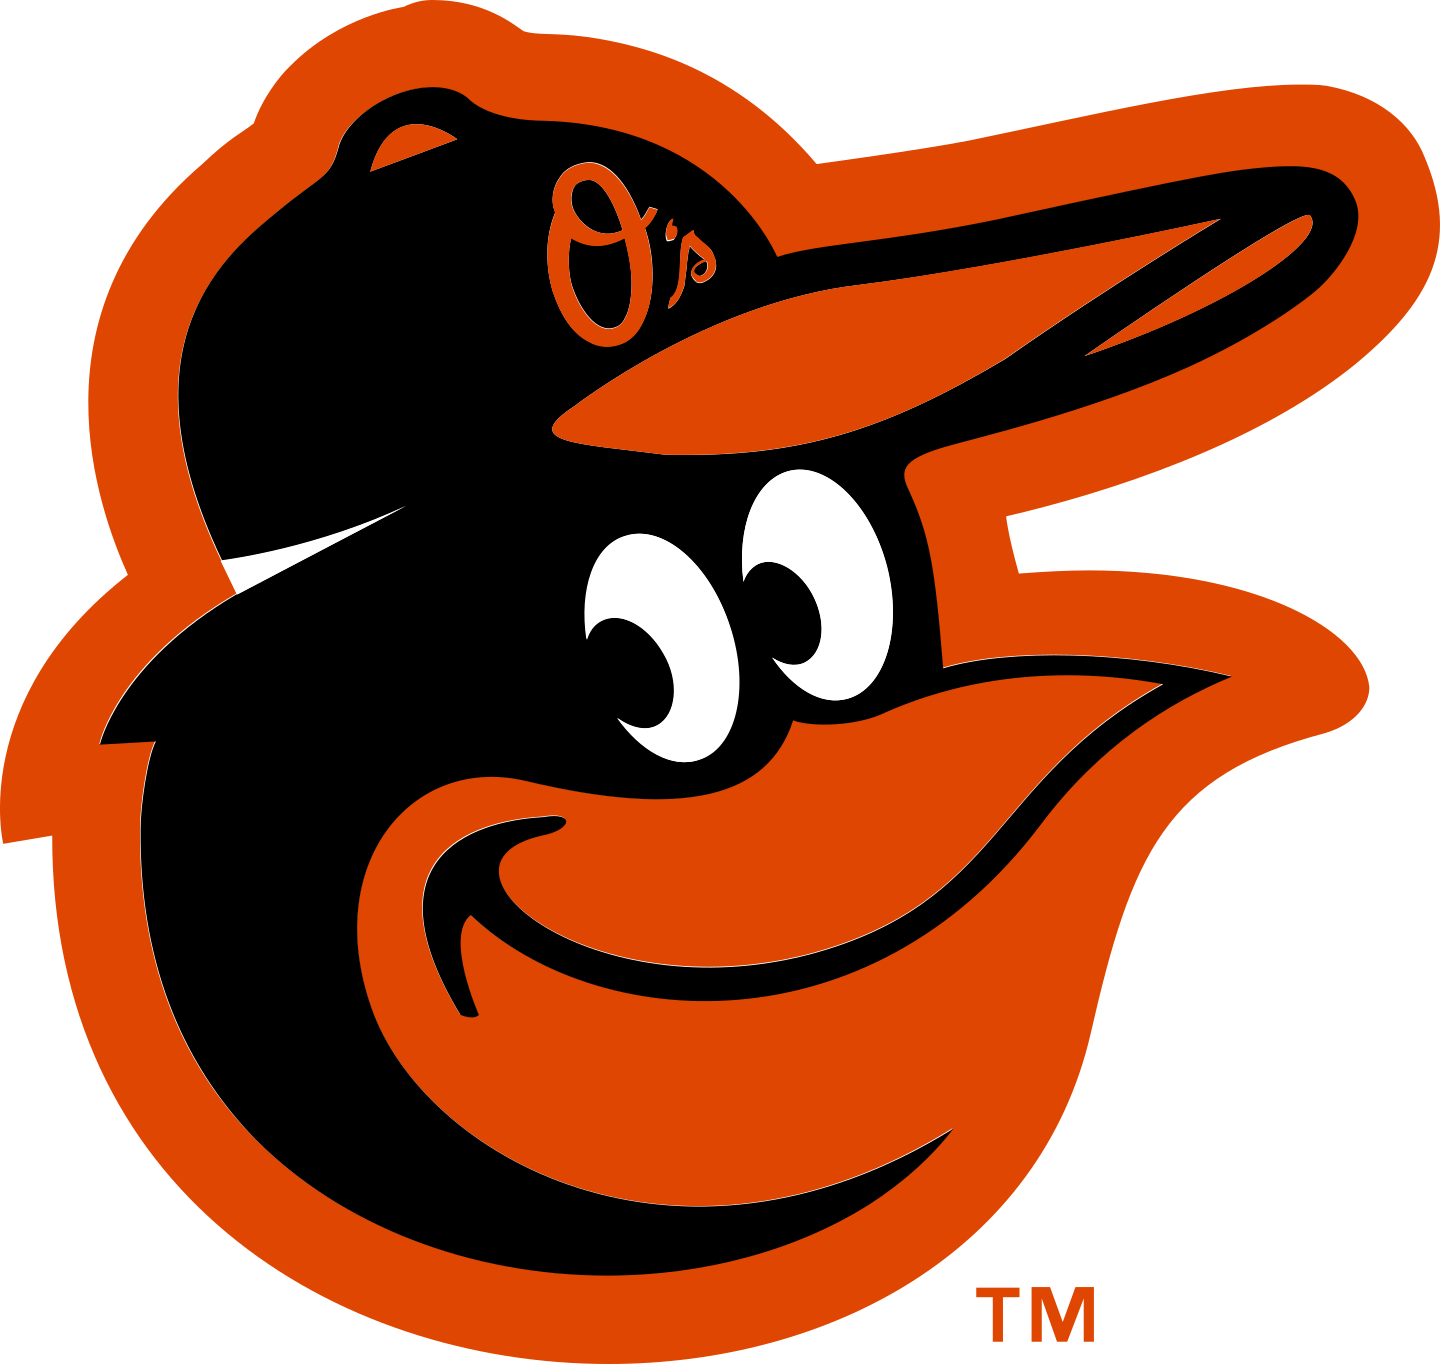 baltimore orioles logo 2 - Baltimore Orioles Logo .SVG 2020 Vector